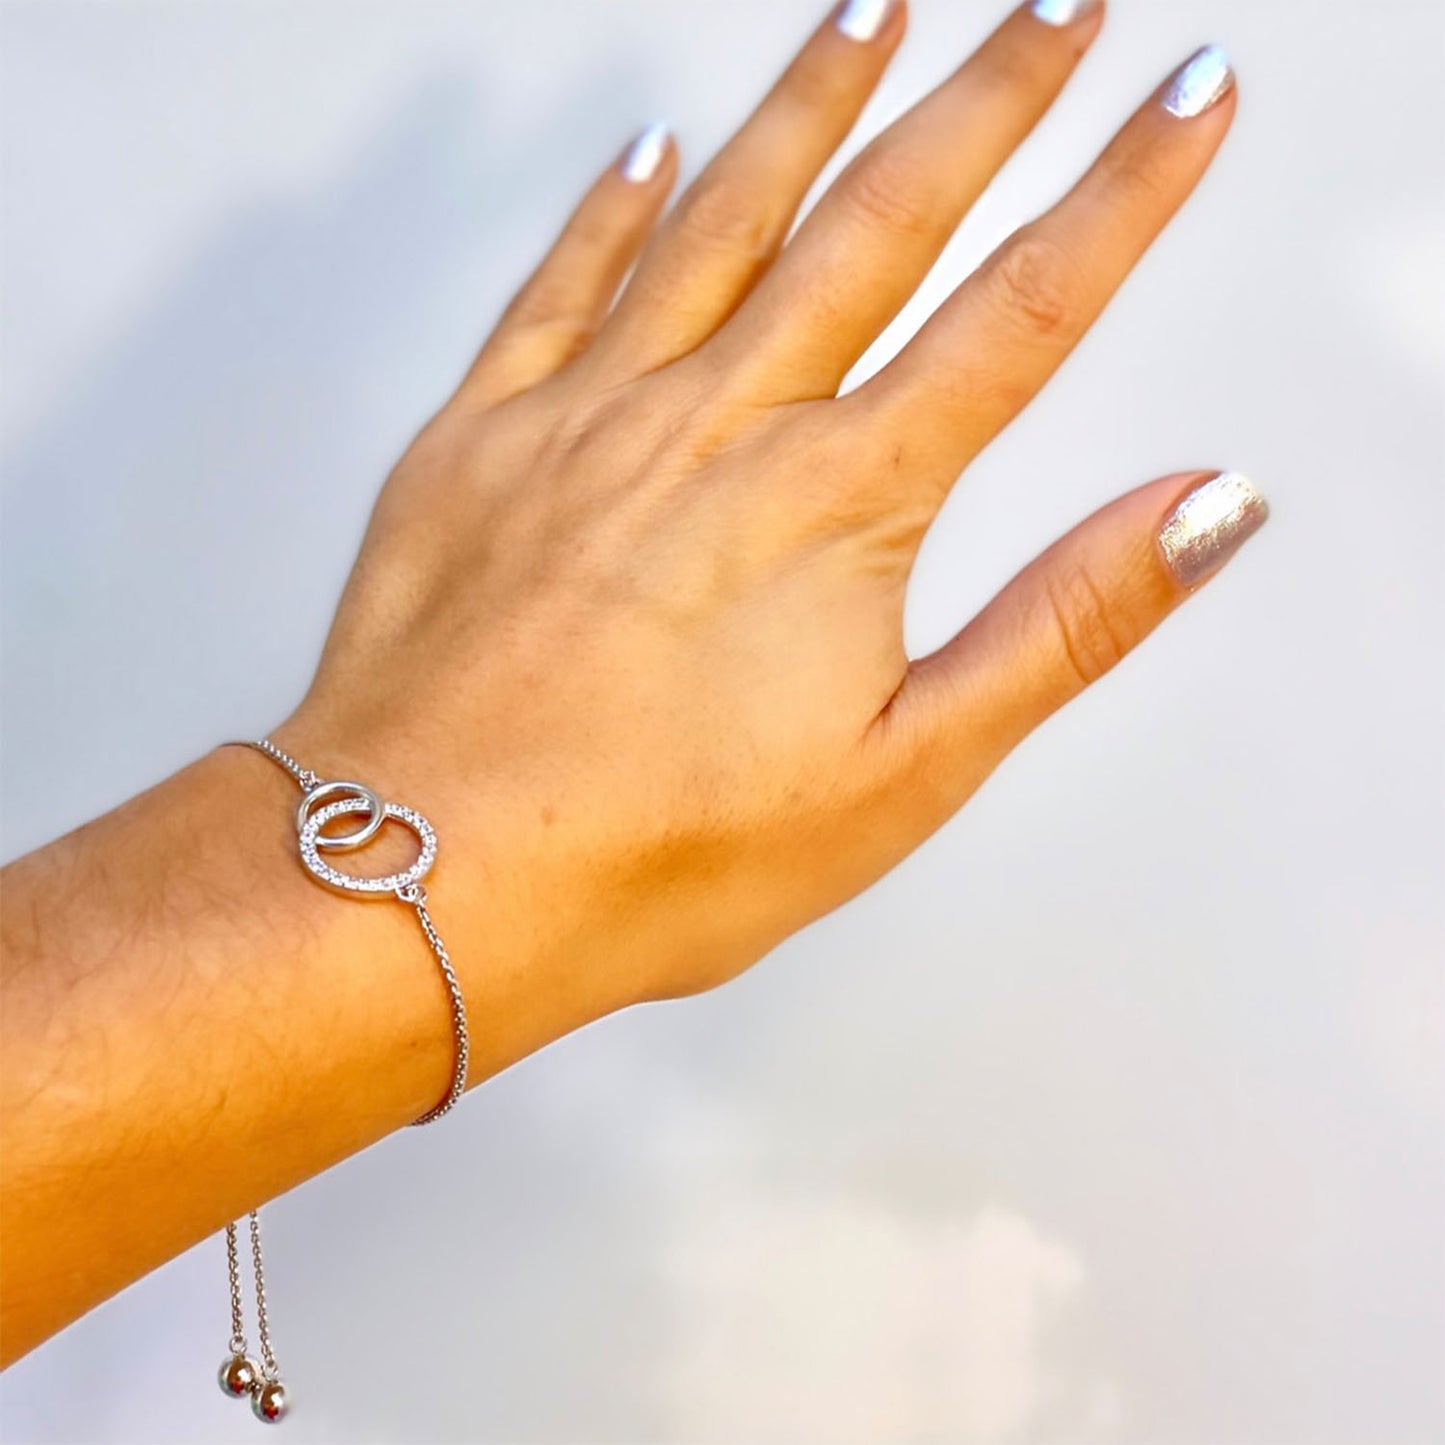 Emory Pave CZ Diamond Infinity Circle Adjustable Bracelet, Silver - Zahra Jewelry